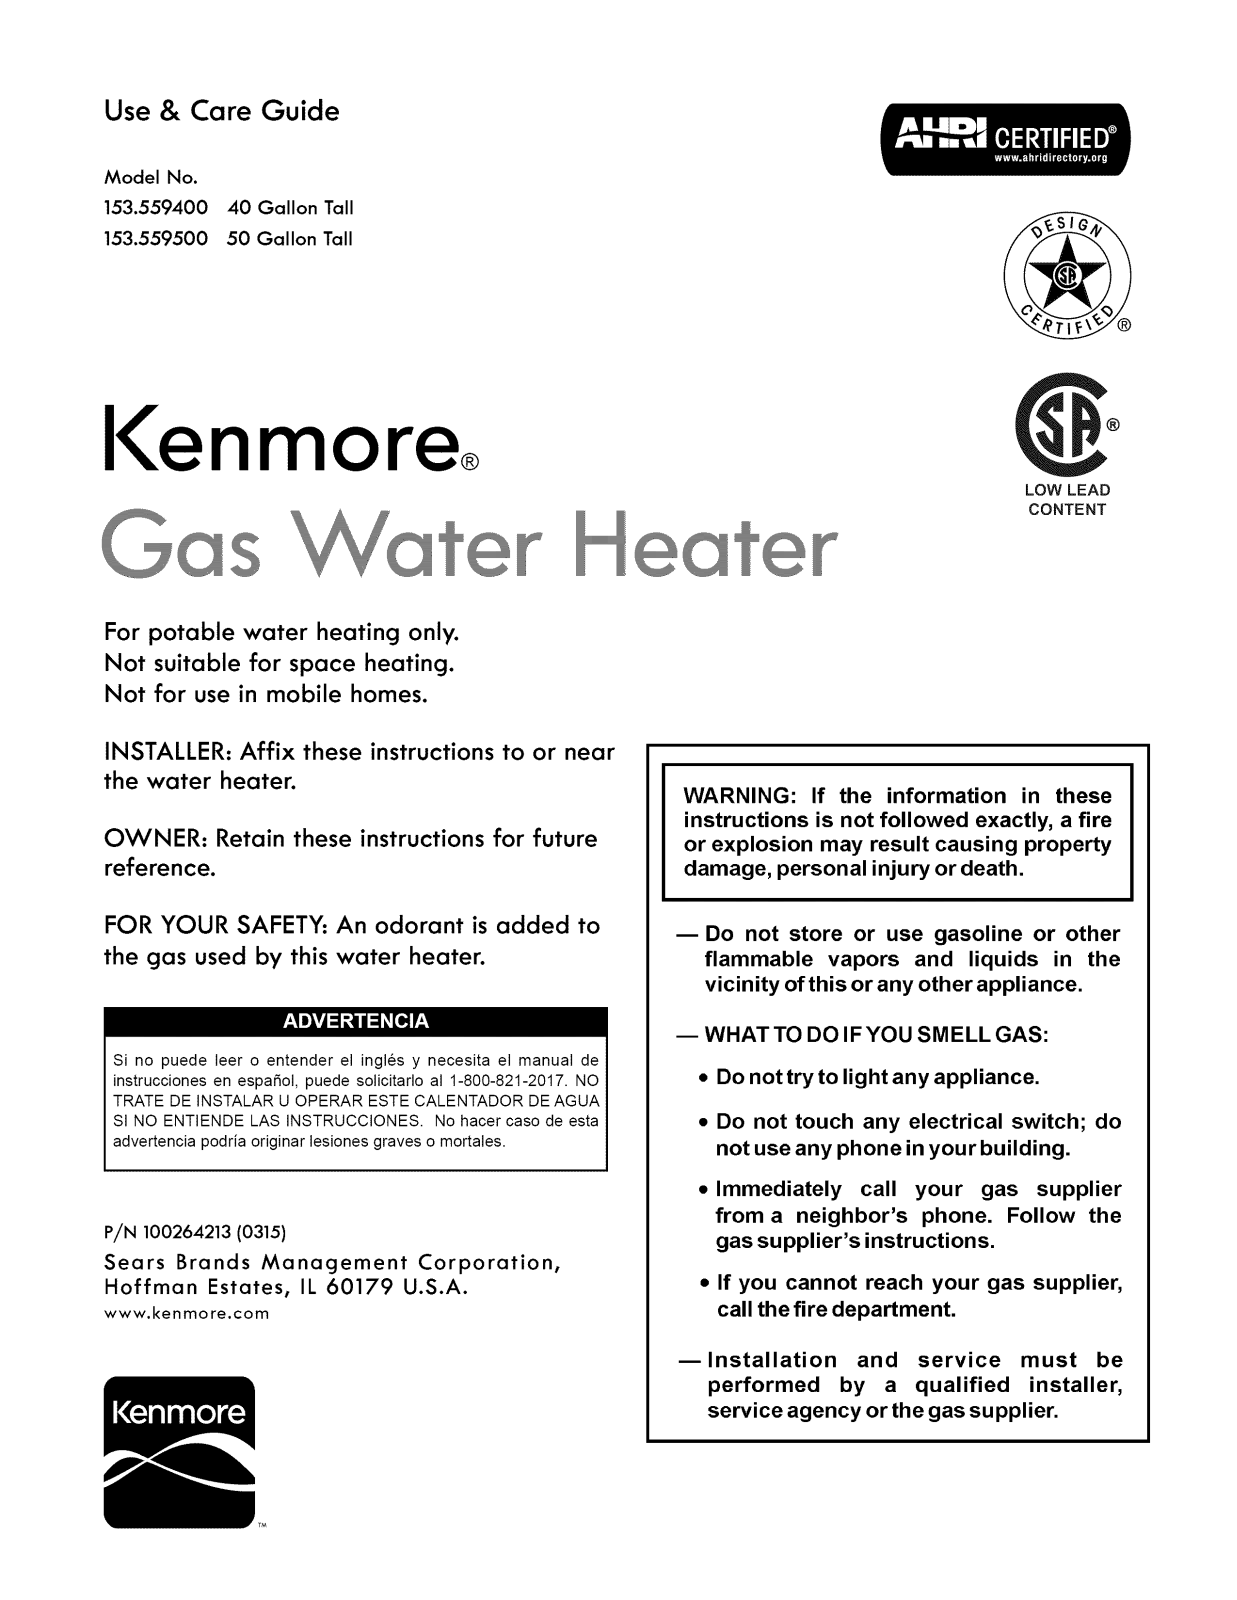 Kenmore 153559500, 153559400 Owner’s Manual